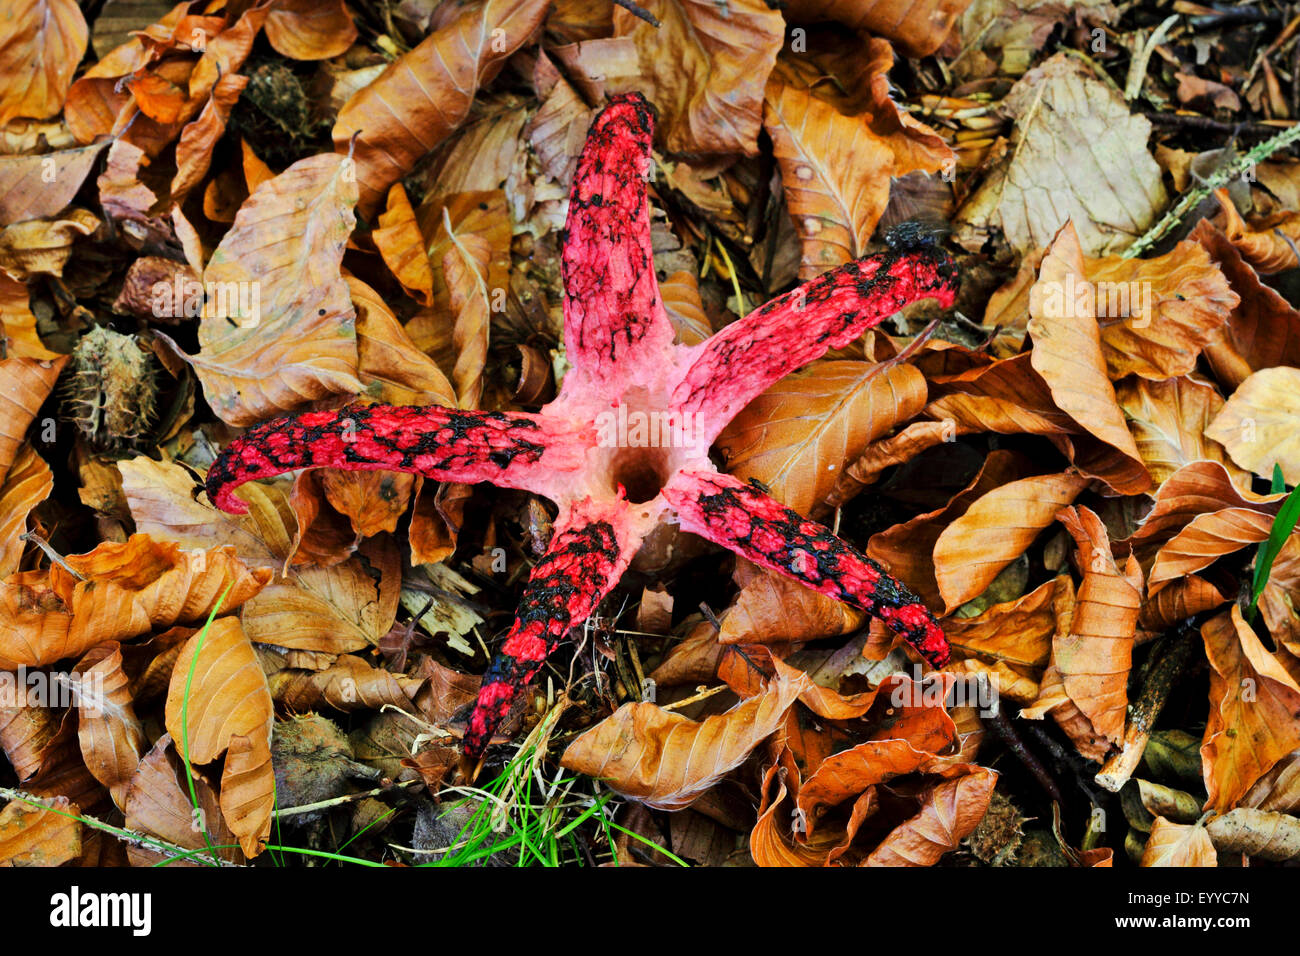 Teufels Finger, Teufels-Kralle-Pilz, Riesen Gestank Horn, Octopus Stinkmorchel (Anthurus Archeri, Clathrus Archeri), Fruchtkörper auf Waldboden, Ansicht von oben, Deutschland Stockfoto